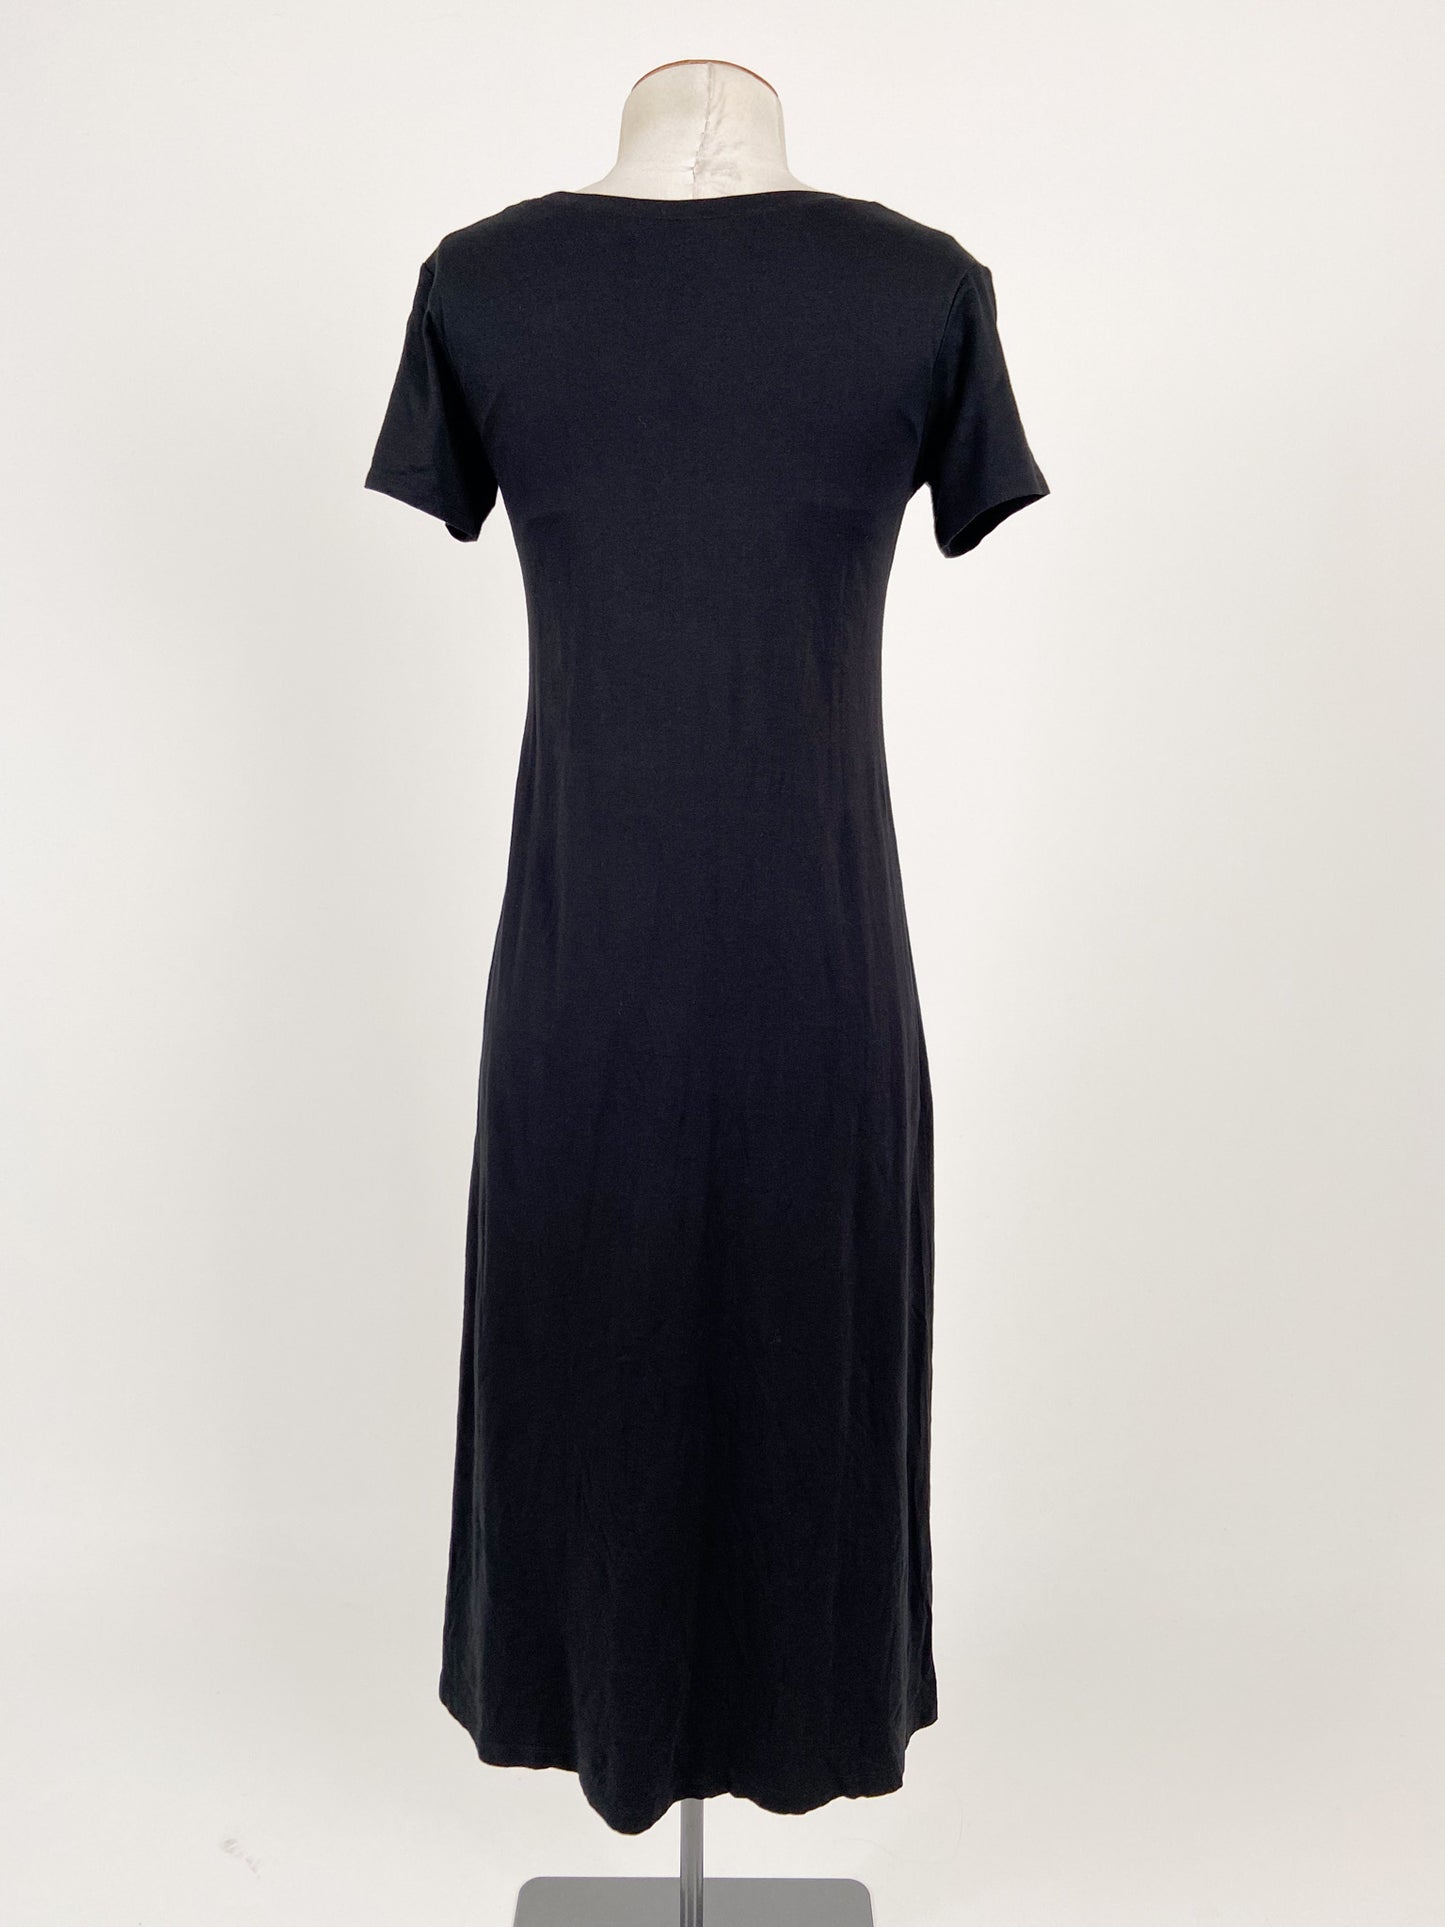 Uniqlo | Black Casual Dress | Size S